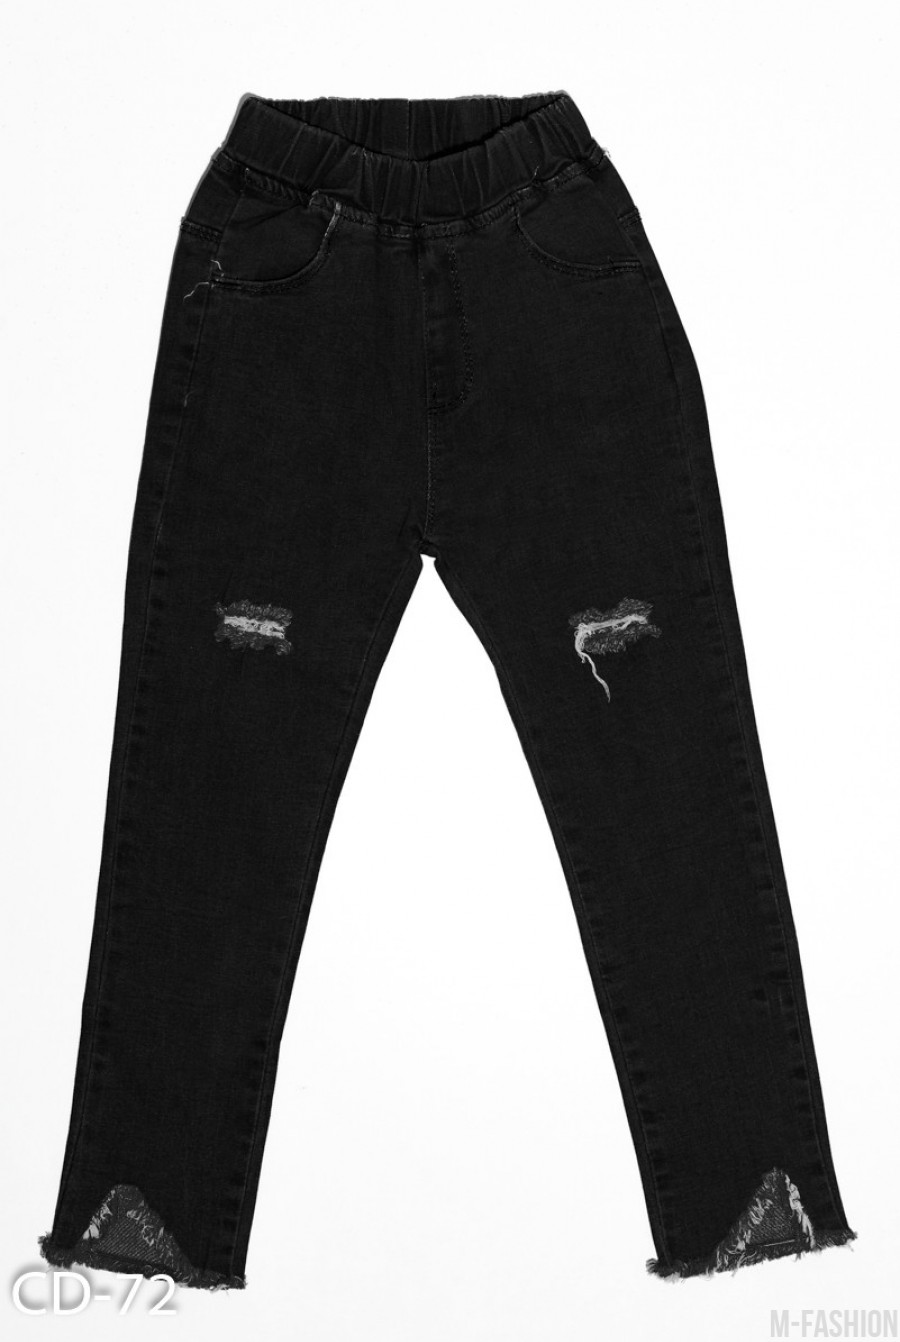 Черные джинсы с рваной перфорацией и бахромой по низу - Фото 1